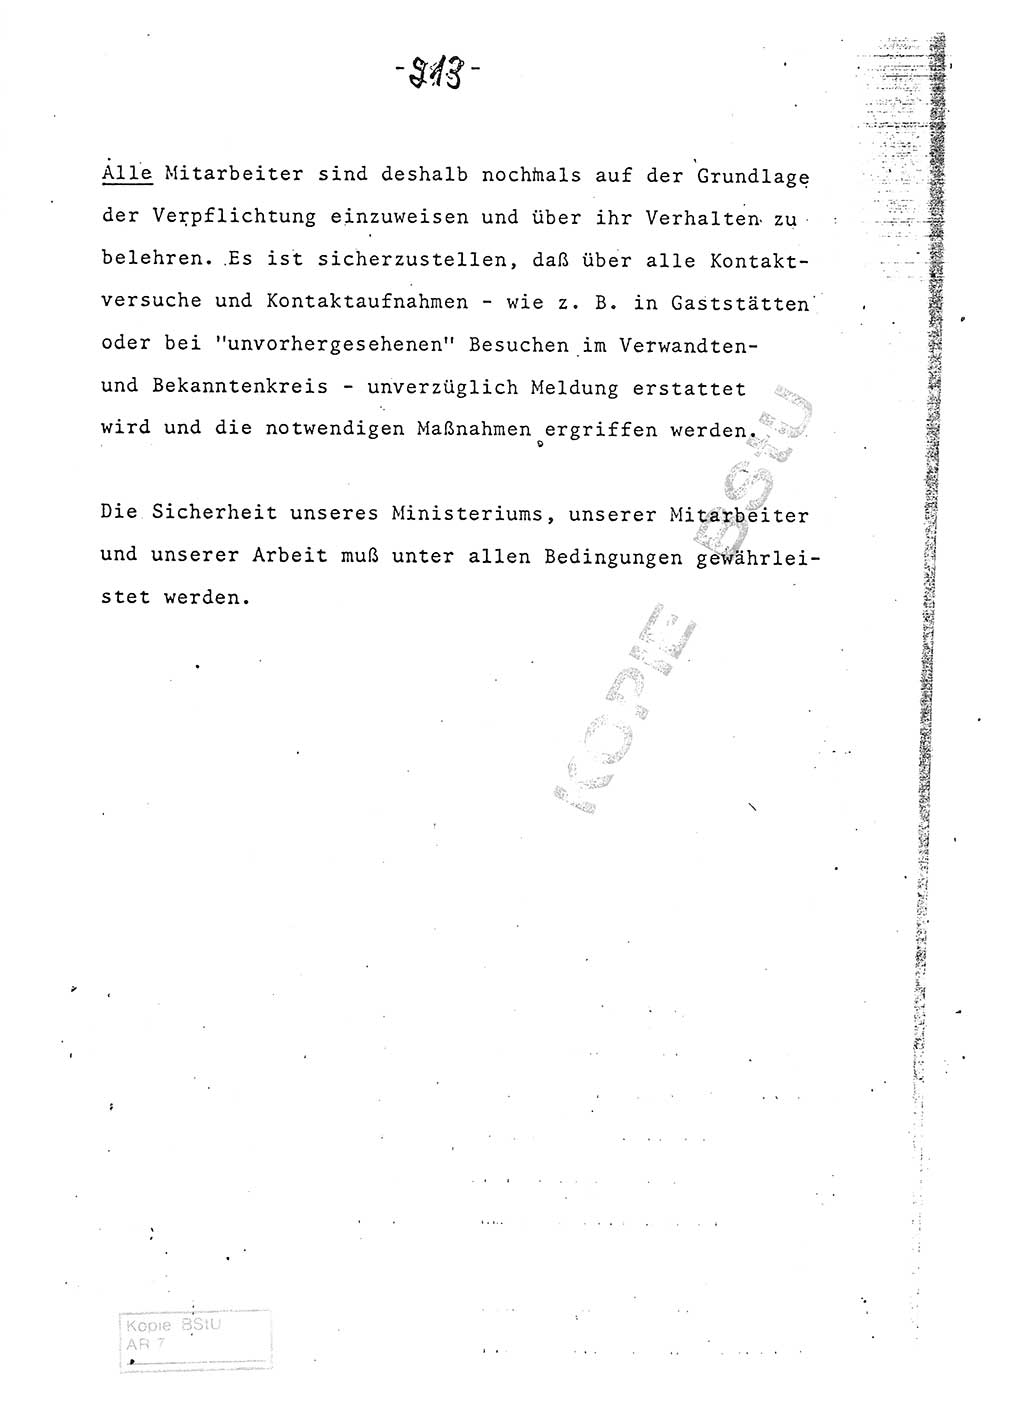 Referat (Entwurf) des Genossen Minister (Generaloberst Erich Mielke) auf der Dienstkonferenz 1972, Ministerium für Staatssicherheit (MfS) [Deutsche Demokratische Republik (DDR)], Der Minister, Geheime Verschlußsache (GVS) 008-150/72, Berlin 25.2.1972, Seite 213 (Ref. Entw. DK MfS DDR Min. GVS 008-150/72 1972, S. 213)